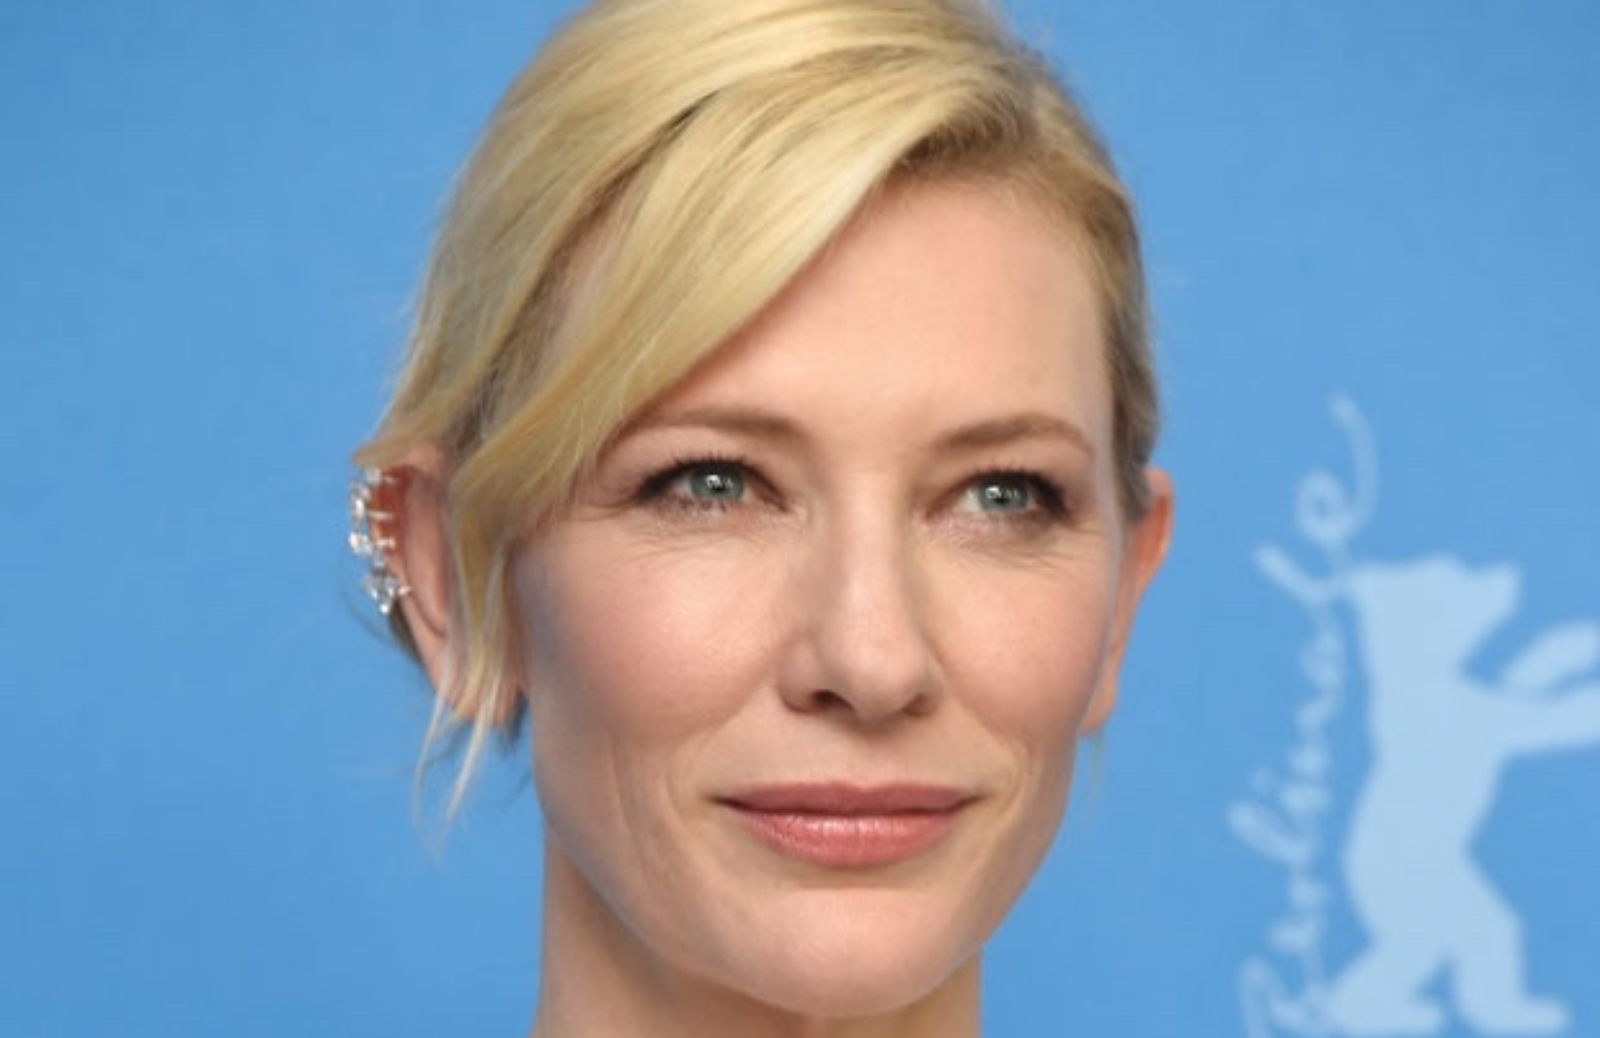 Come copiare il make-up di Cate Blanchett 